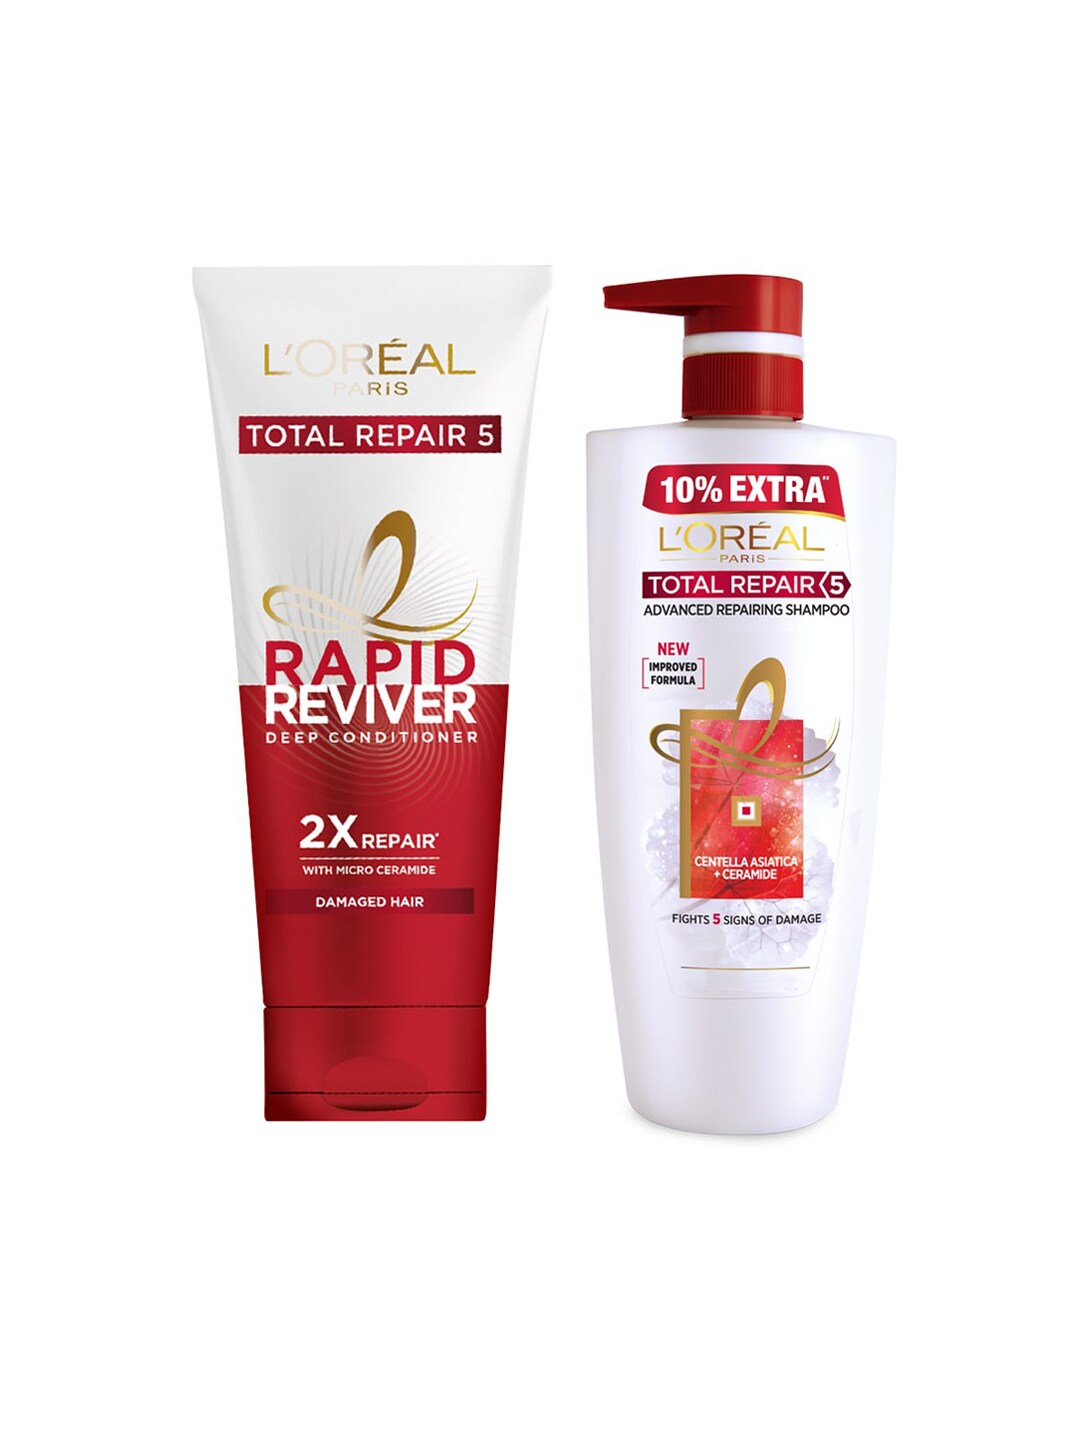 LOreal Paris Set Of Total Repair 5 Shampoo & Rapid Reviver Total Repair 5 Conditioner Price in India